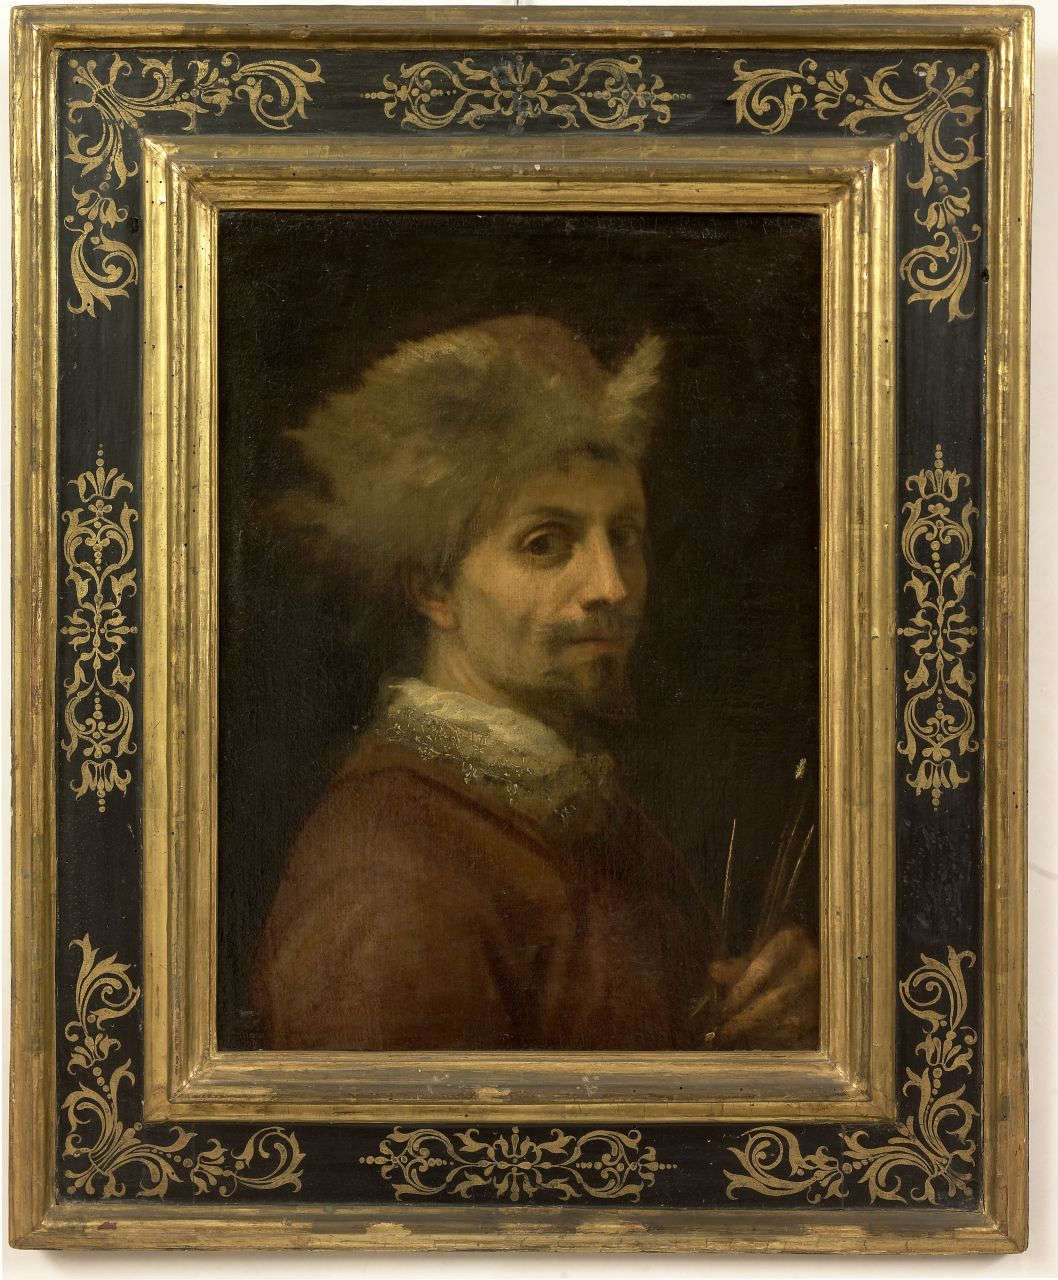 Ludovico Cardi known as Cigoli, Self-Portrait (1606-1607; oil on canvas, 58 x 44 cm; Florence, Uffizi Galleries, inv. 1890 no. 1729)